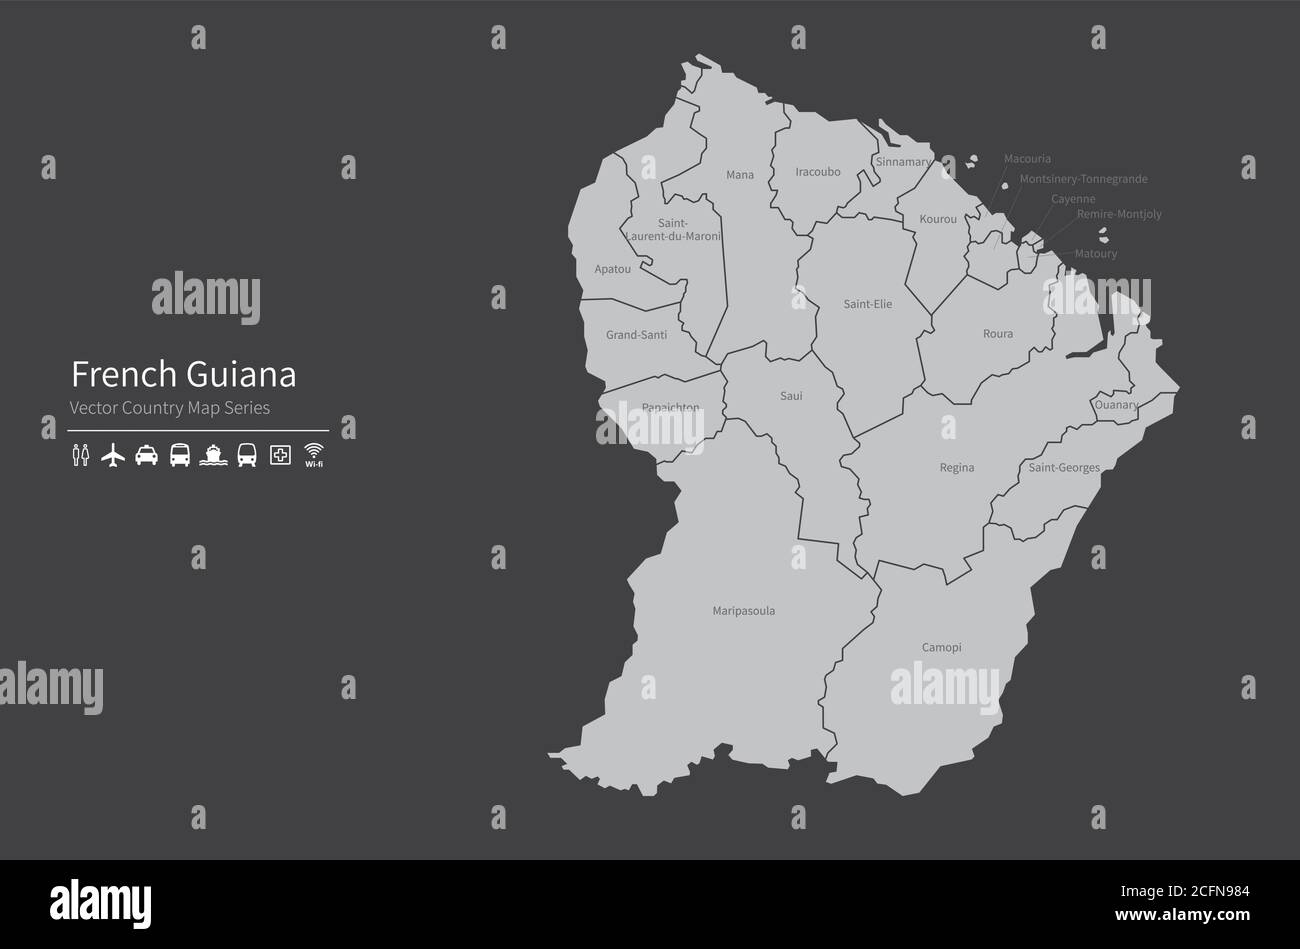 Carte de la Guyane française. Carte nationale du monde. Série de cartes de pays de couleur grise. Illustration de Vecteur